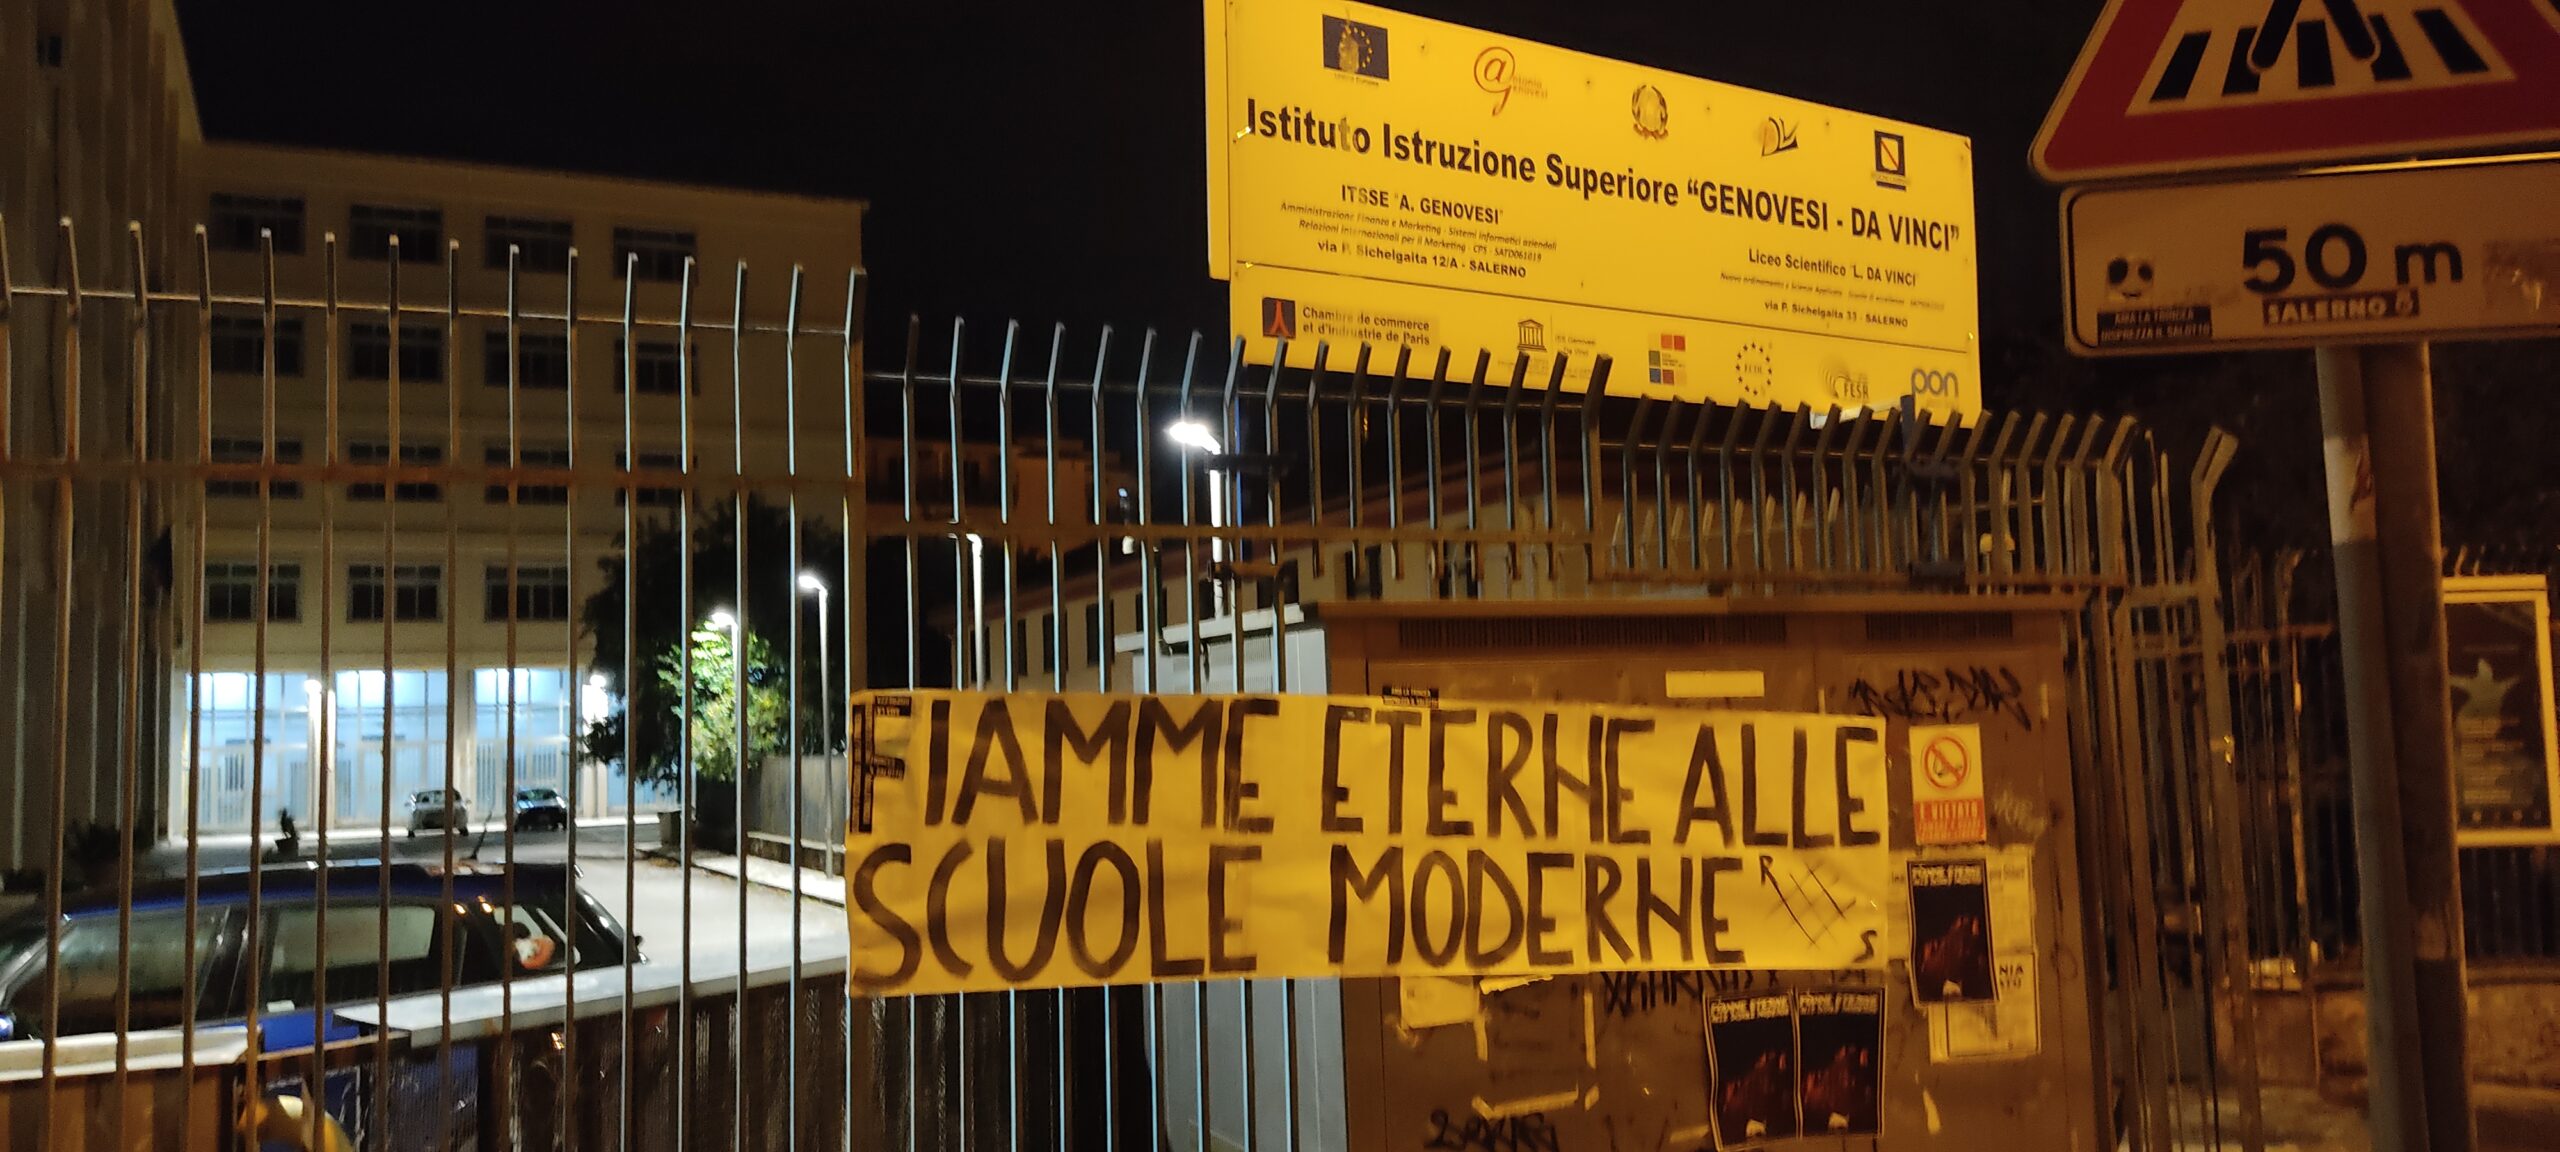 Salerno: Rete Studentesca “Fiamme eterne alle scuole moderne”